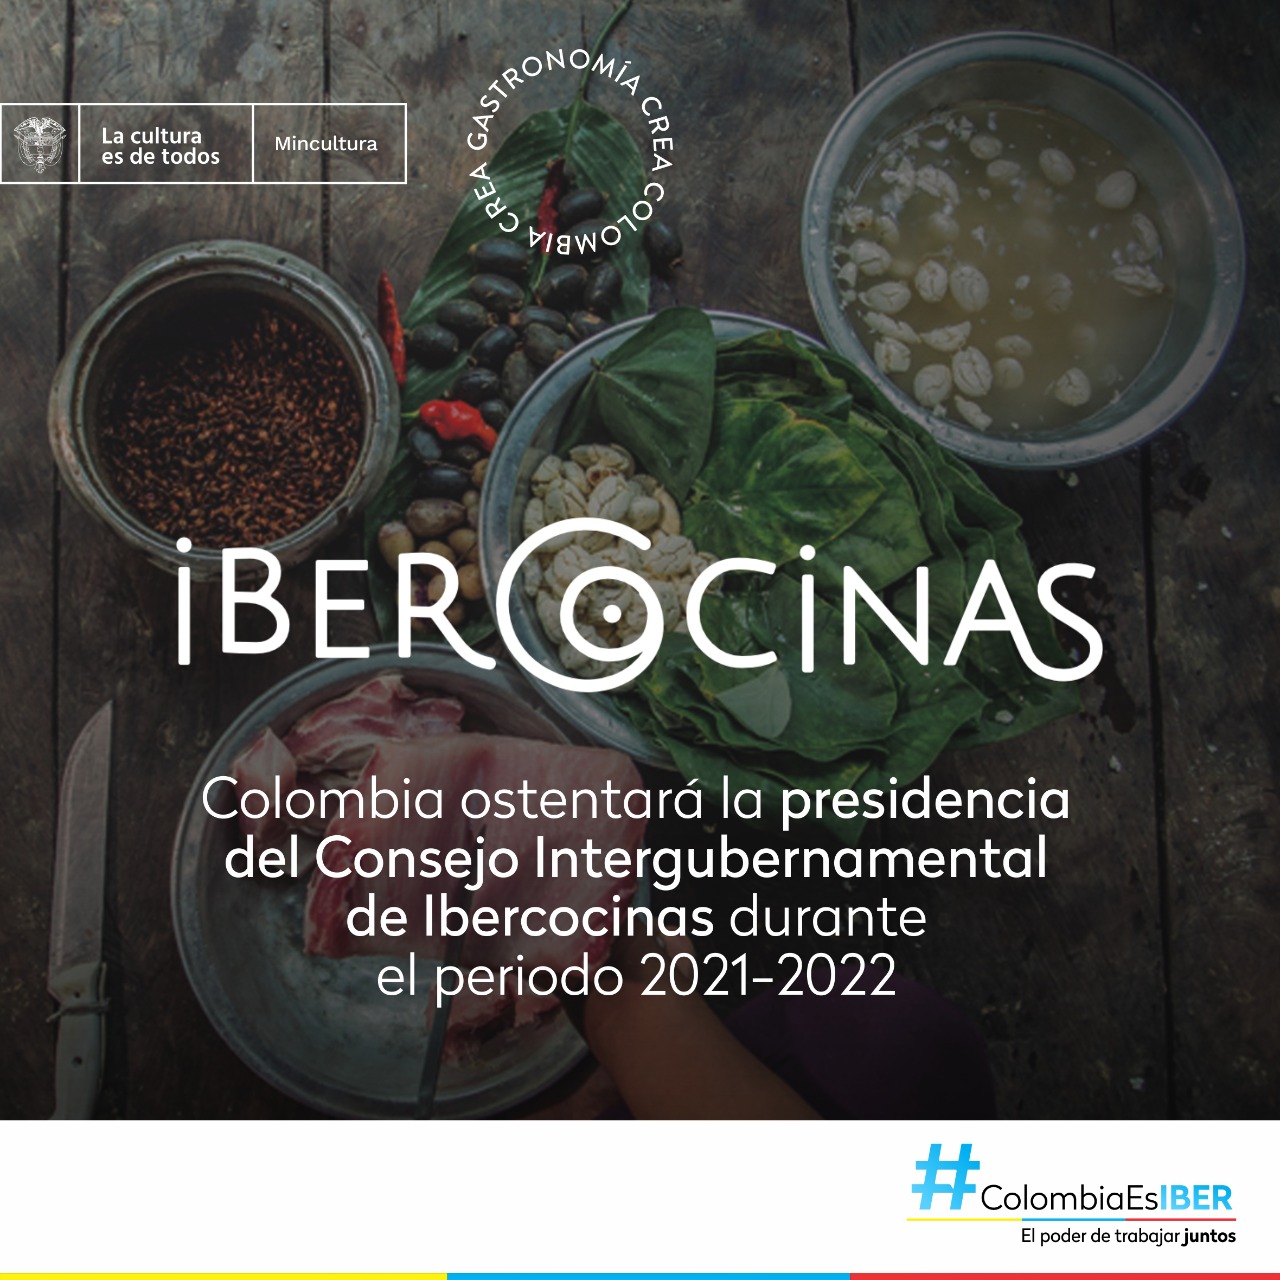 Colombia presidirá el Consejo Intergubernamental de Ibercocinas durante el periodo 2021-2022